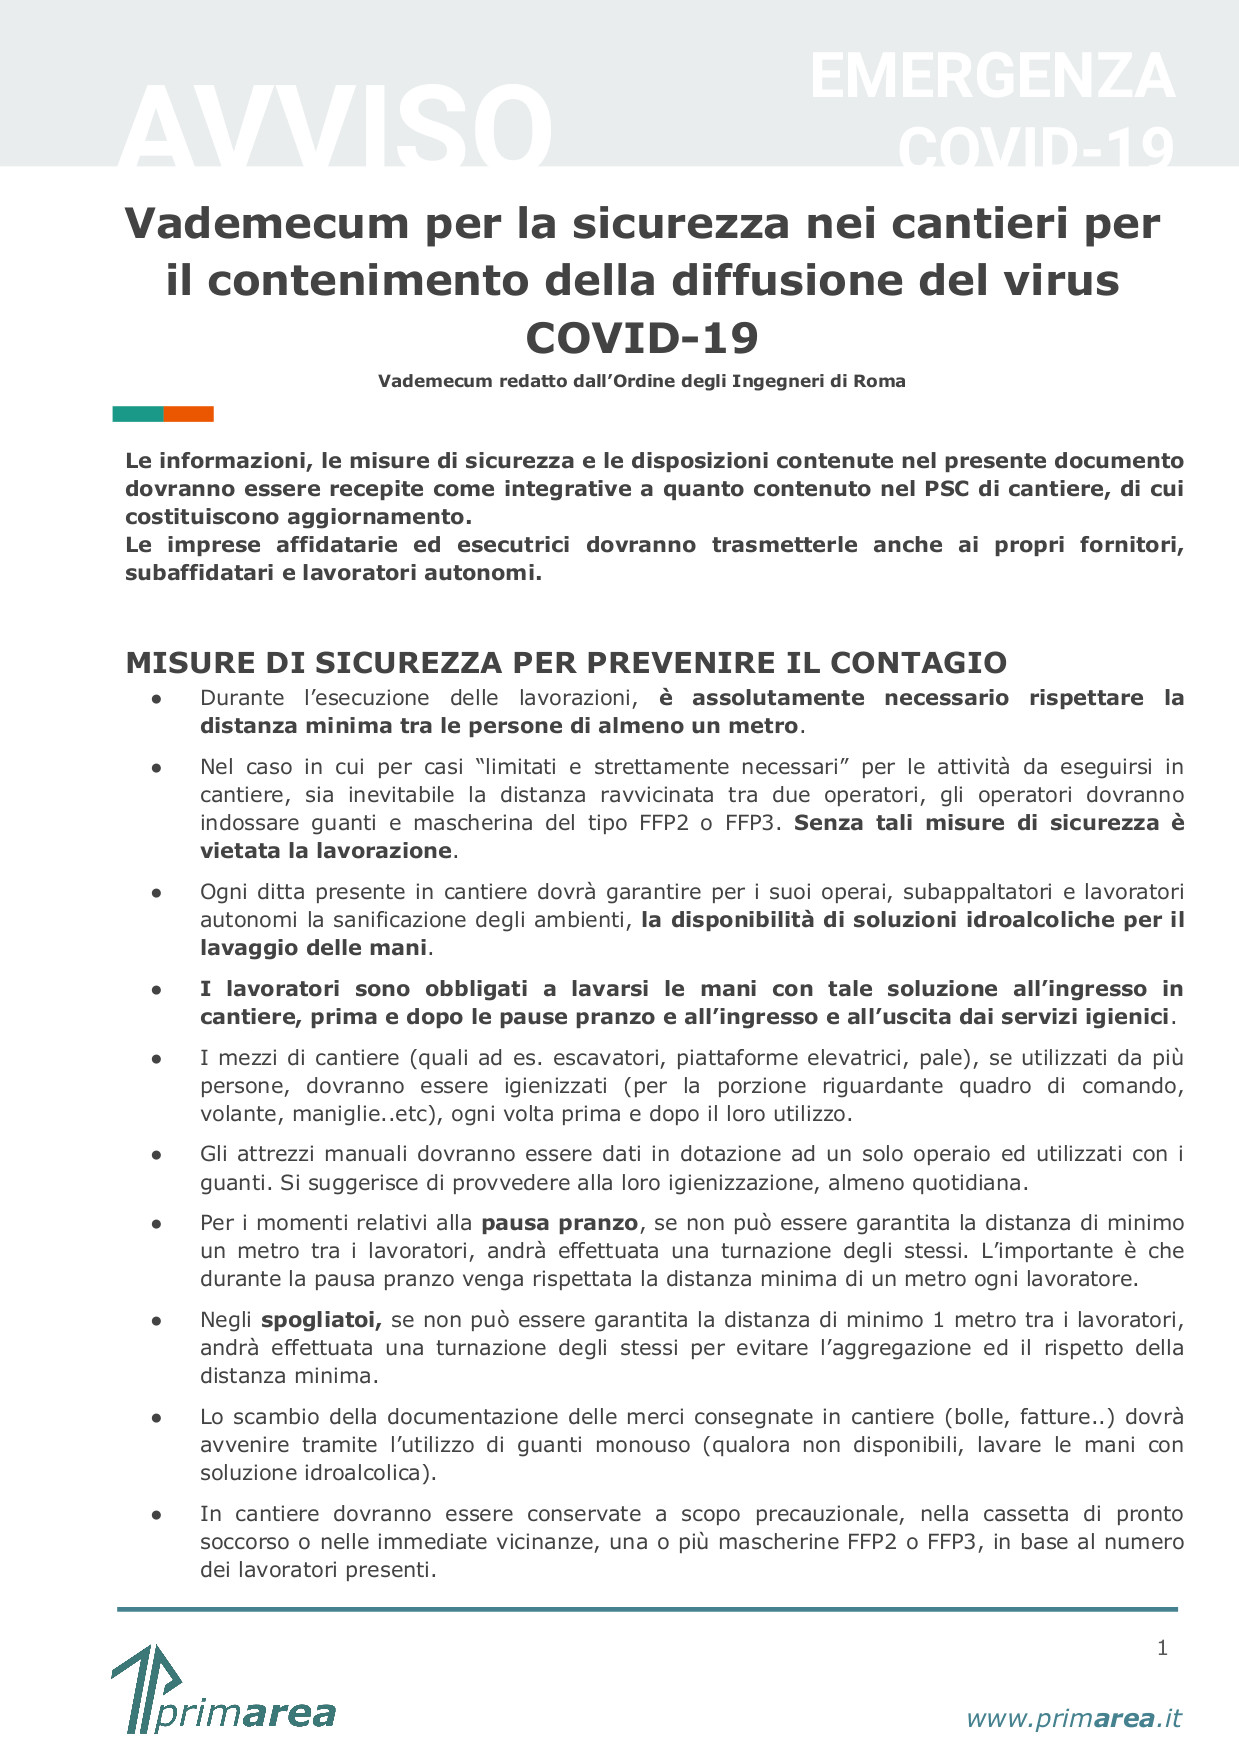 Vademecum per la sicurezza nei cantieri per il contenimento della diffusione del virus COVID-19